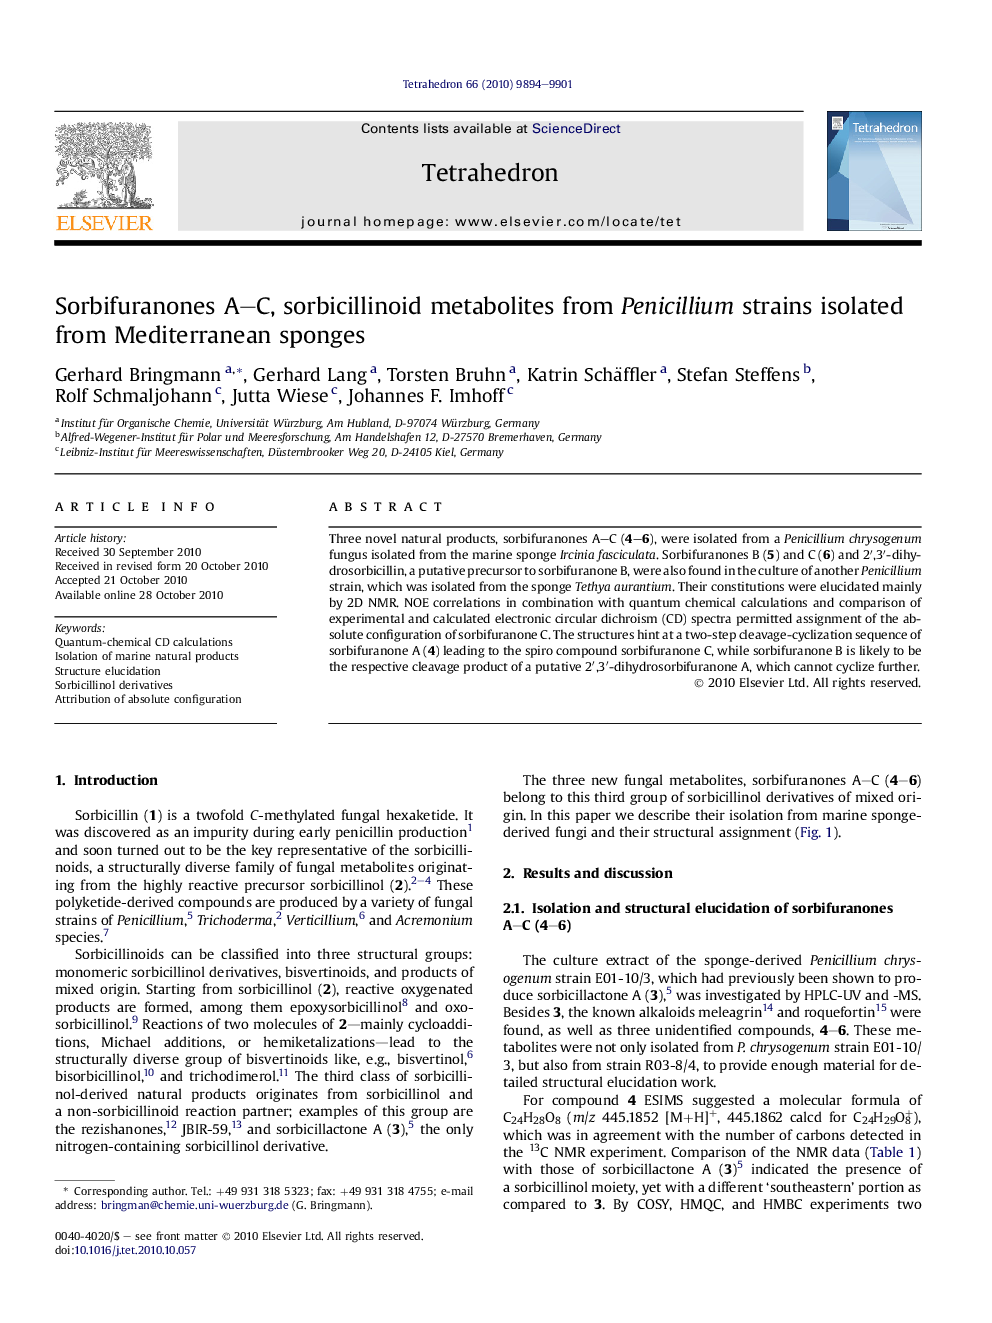 Sorbifuranones A–C, sorbicillinoid metabolites from Penicillium strains isolated from Mediterranean sponges